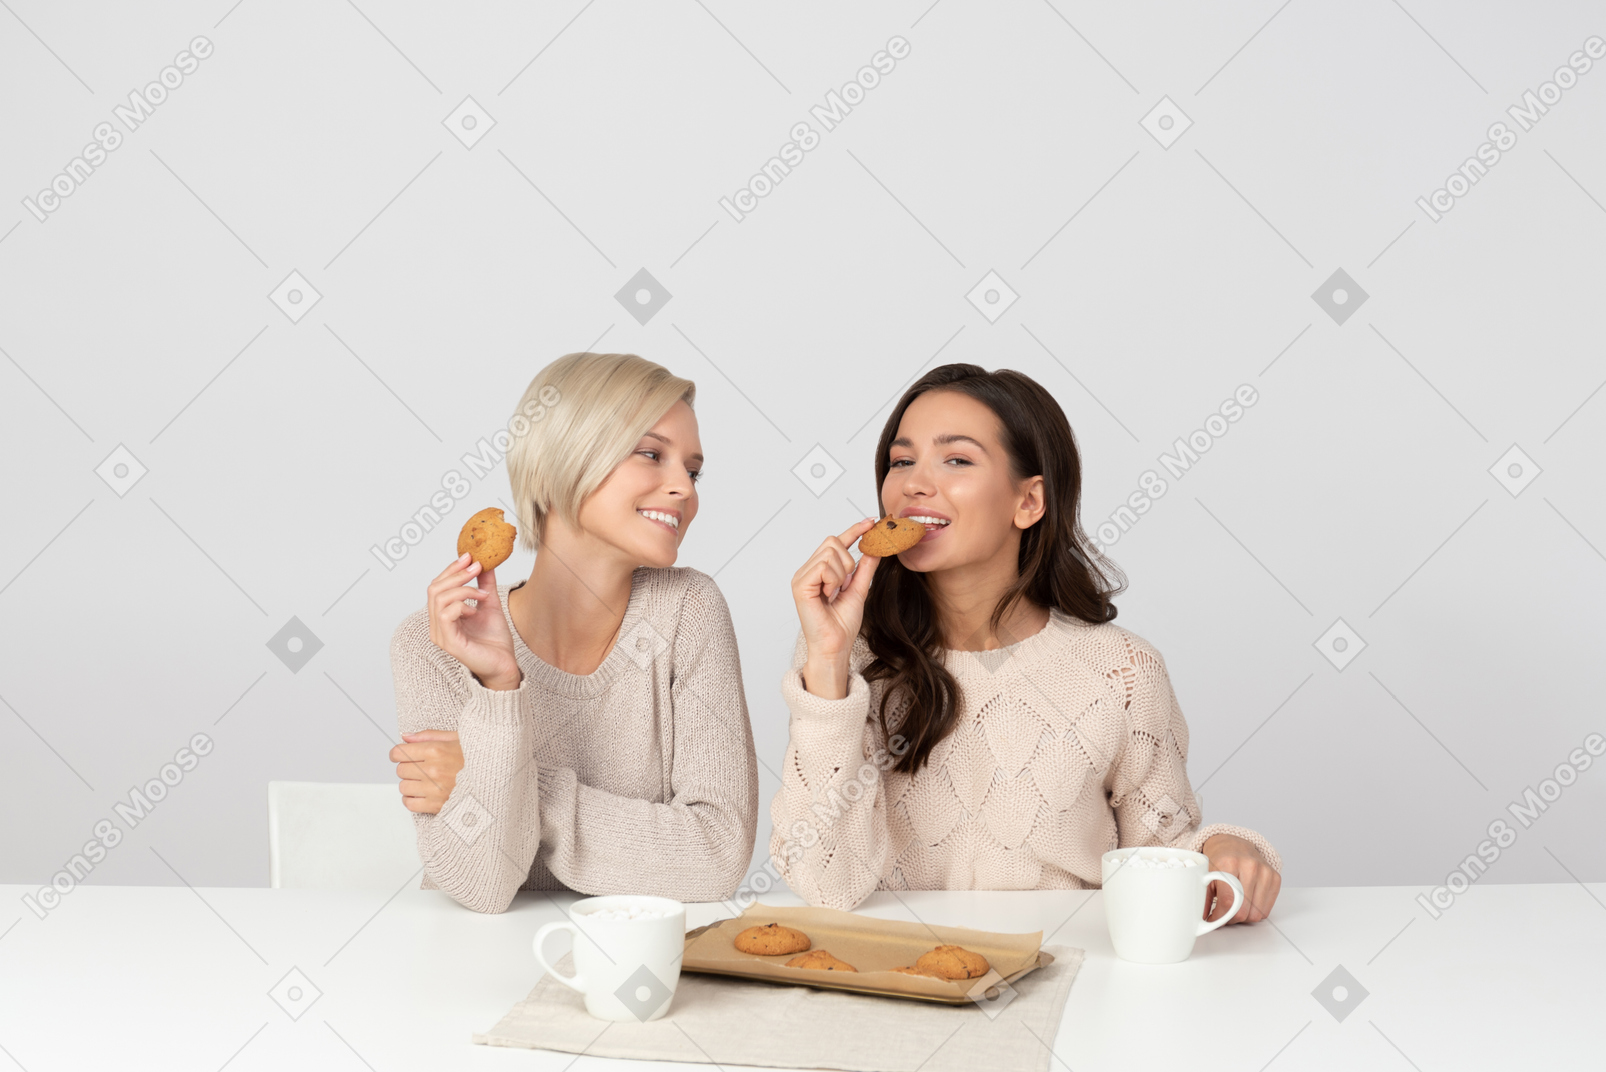 Mulheres jovens comendo biscoitos e sorrindo